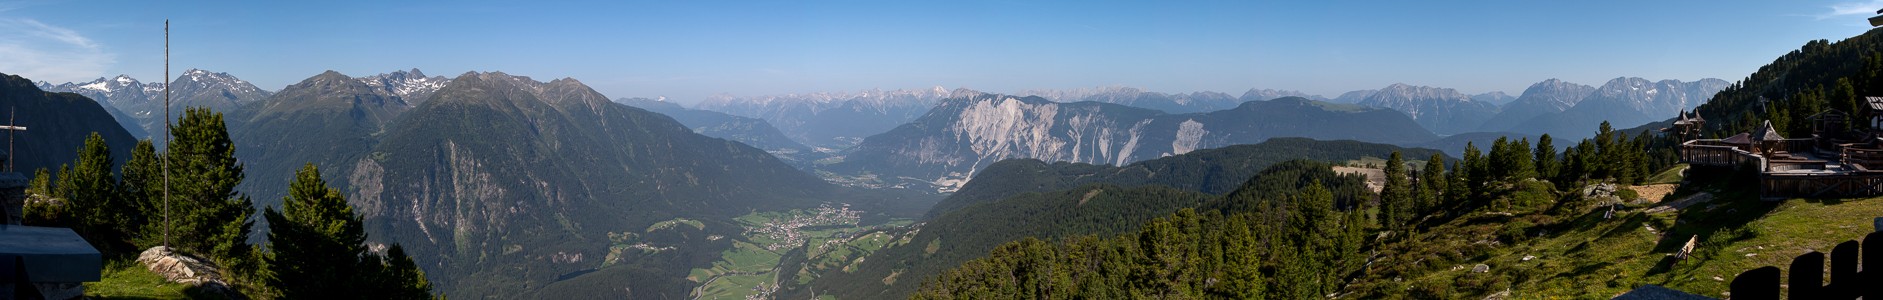 Hochoetz Blick von der Bielefelder Hütte: Ötztaler Alpen, Ötztal, Inntal, Lechttaler Alpen und Mieminger Kette